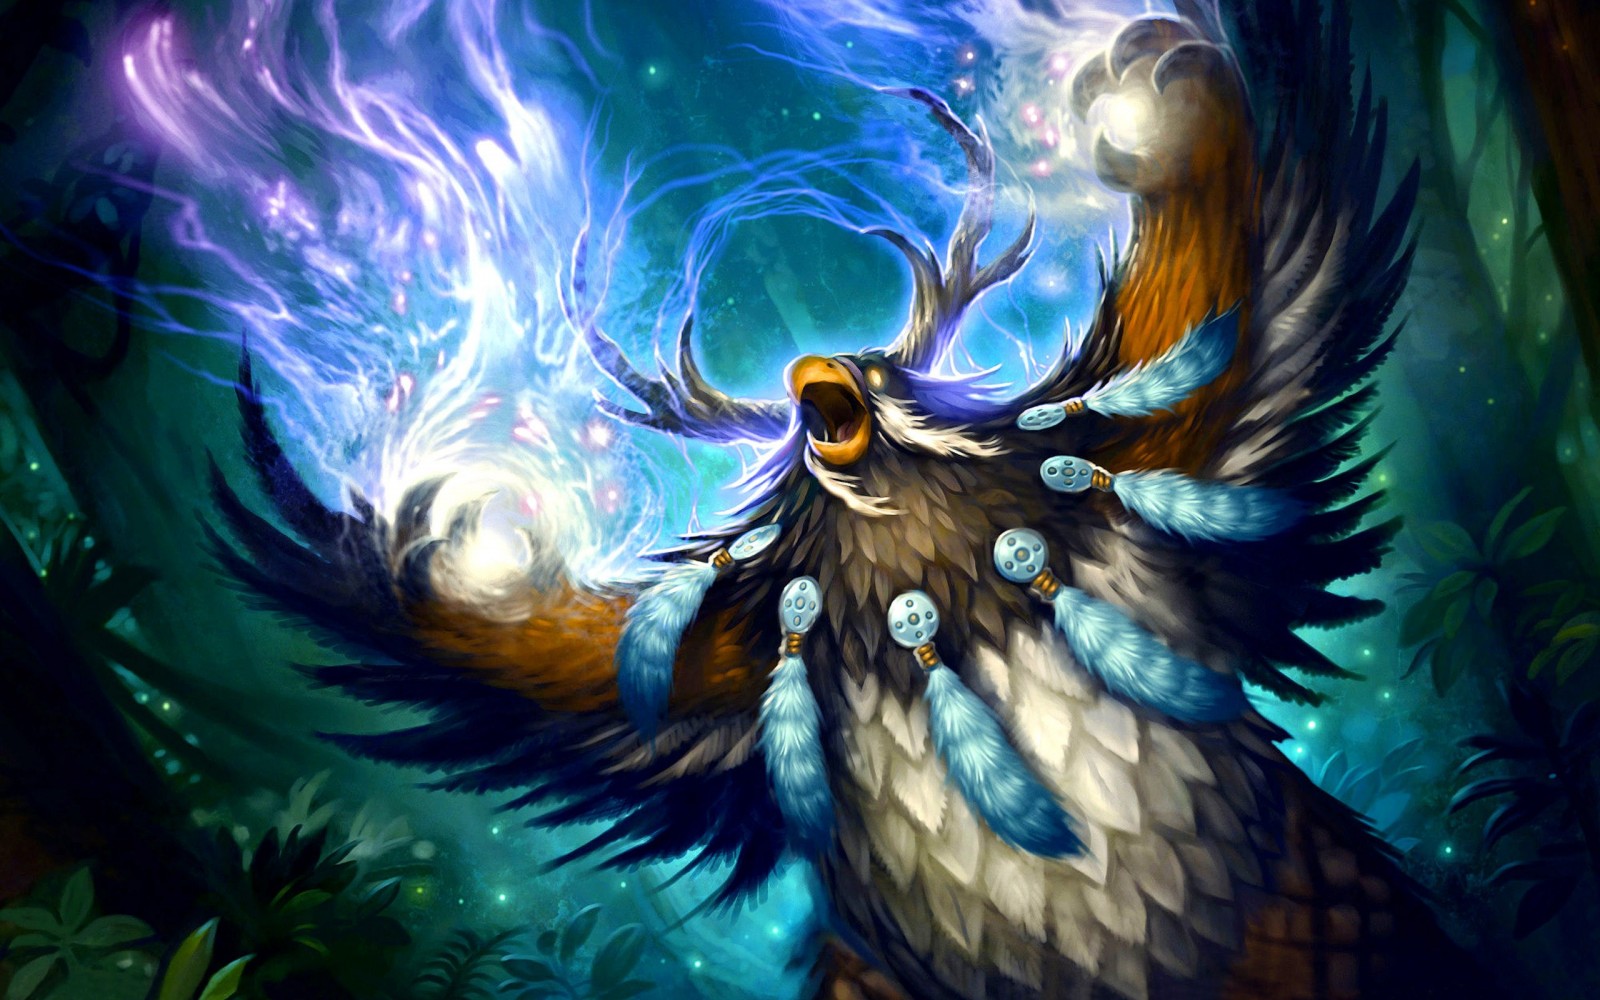 Illustration World Of Warcraft Mythology